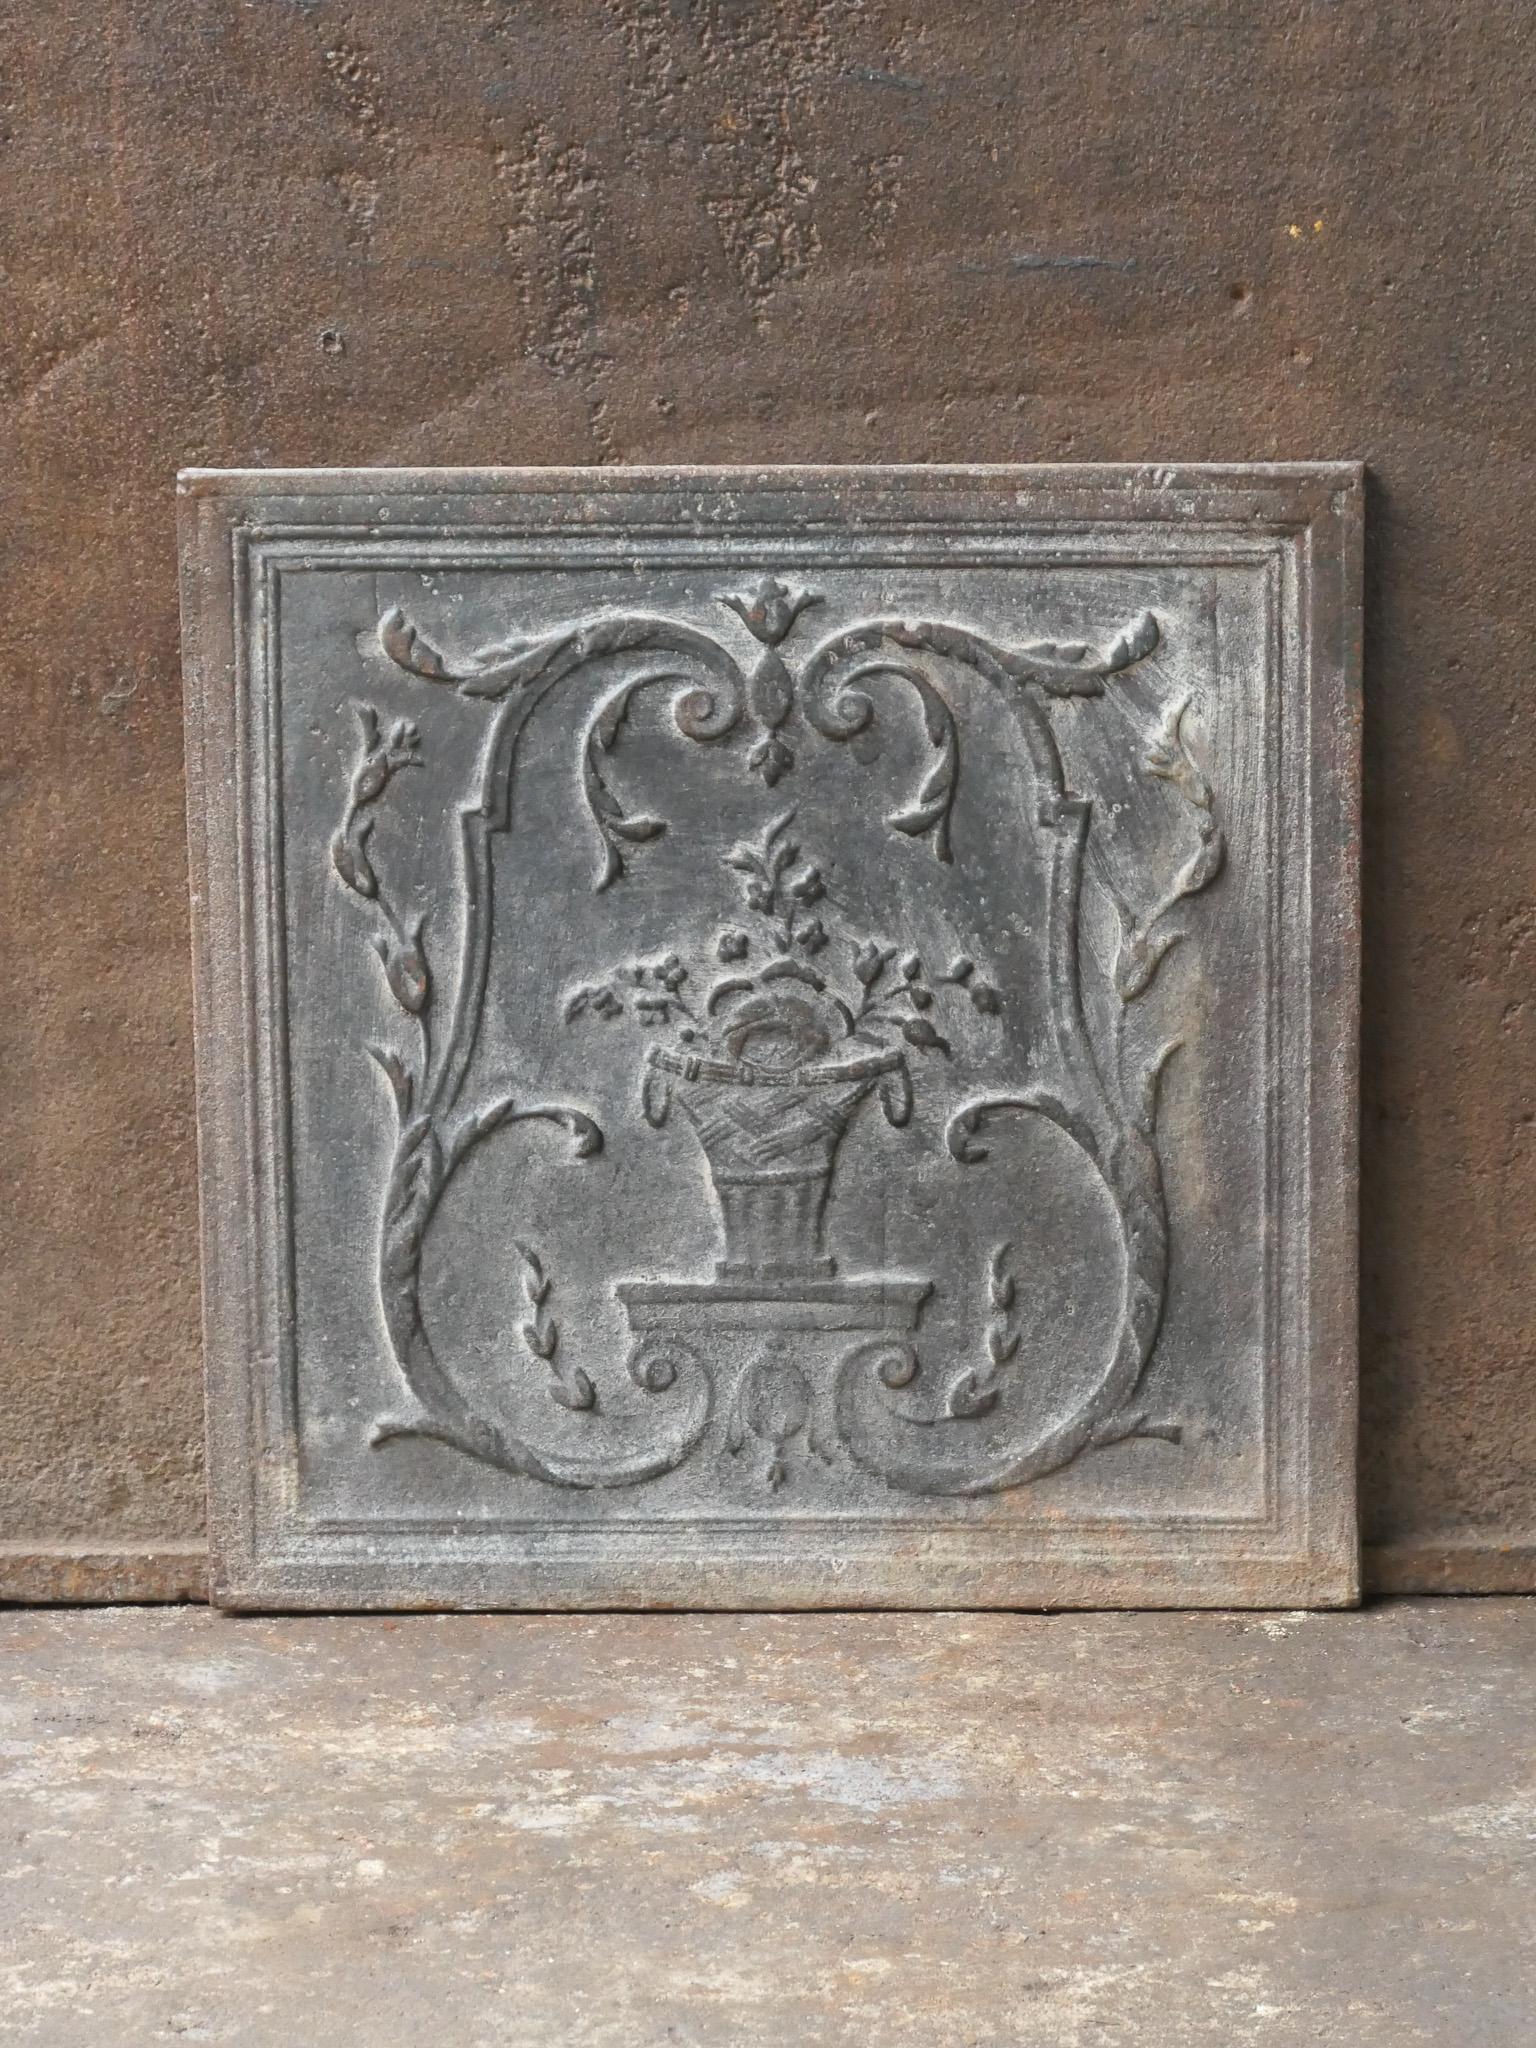 Plaque de cheminée d'époque néoclassique française du 18e - 19e siècle avec un panier de fleurs.

La plaque de cheminée est en fonte et a une patine brune naturelle. Sur demande, il peut être réalisé en noir / étain. La plaque de cheminée est en bon